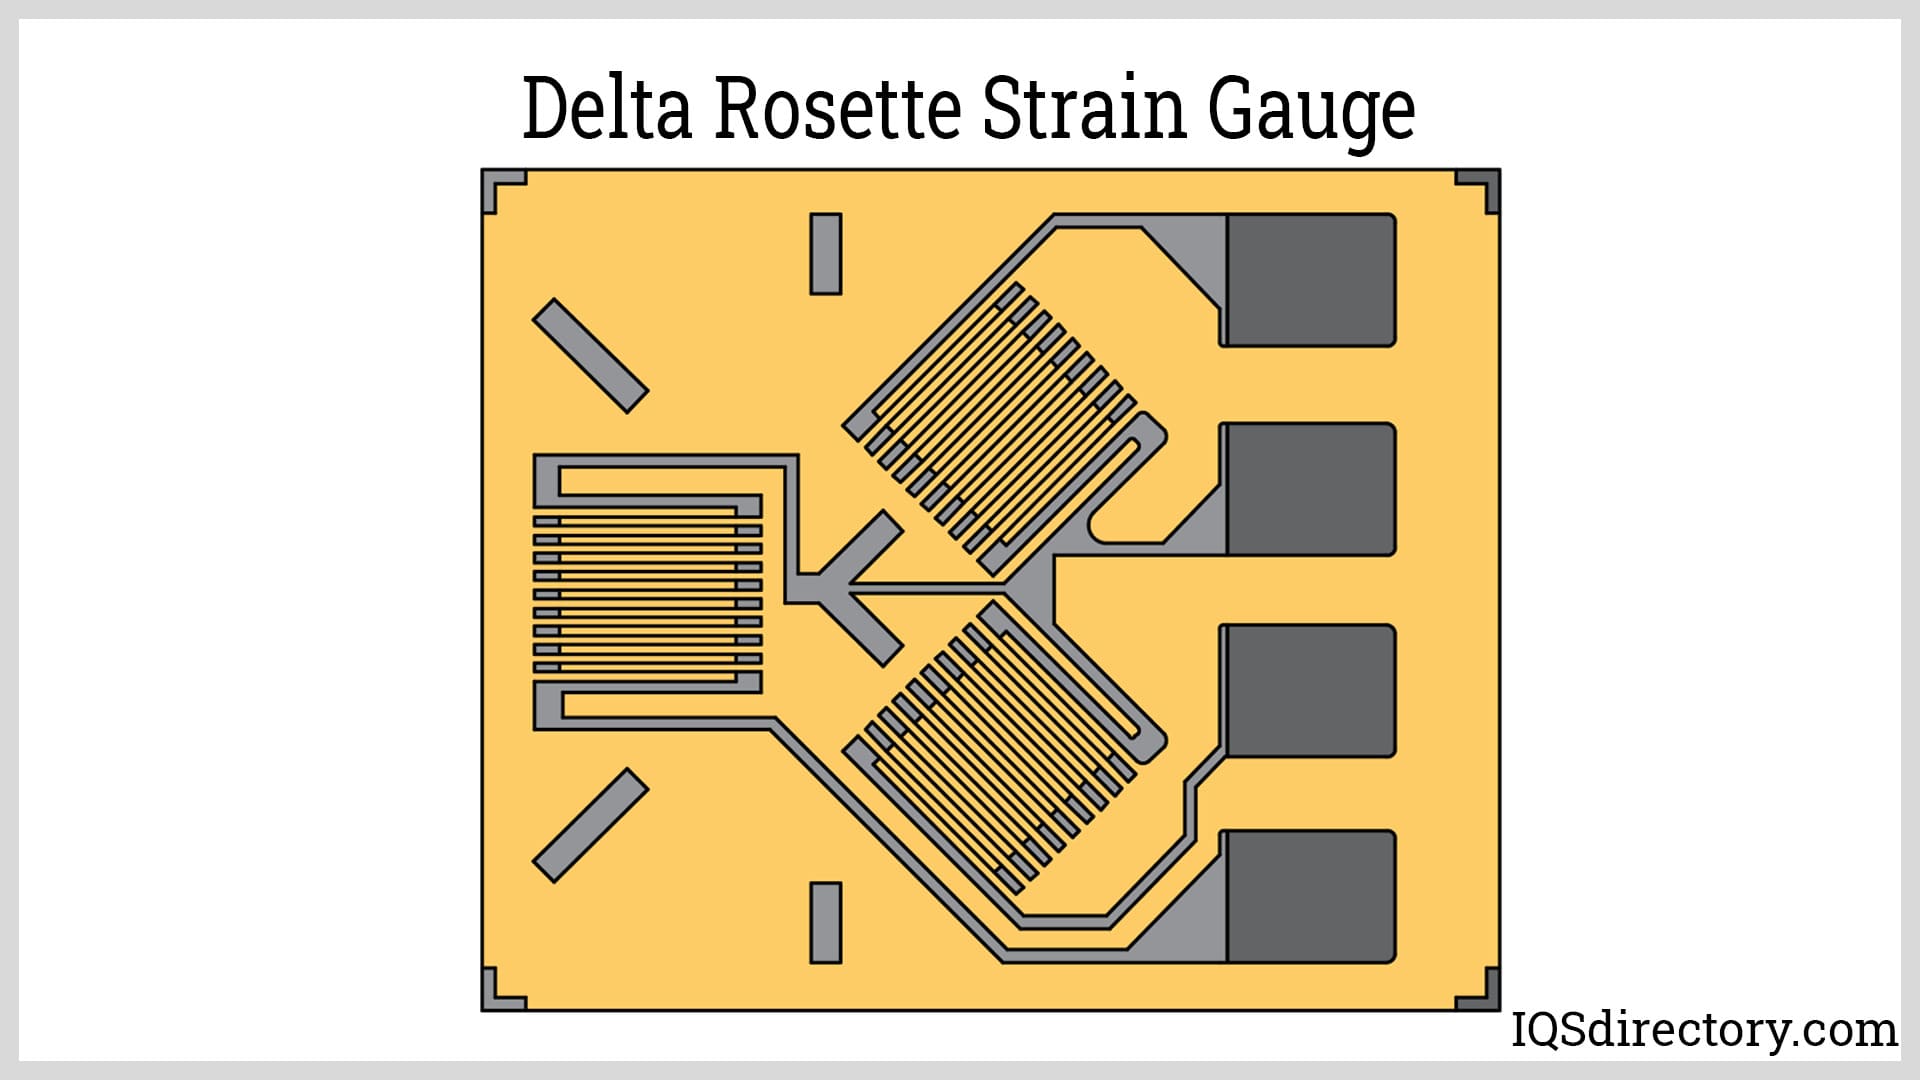 Delta Rosette Strain Gauge